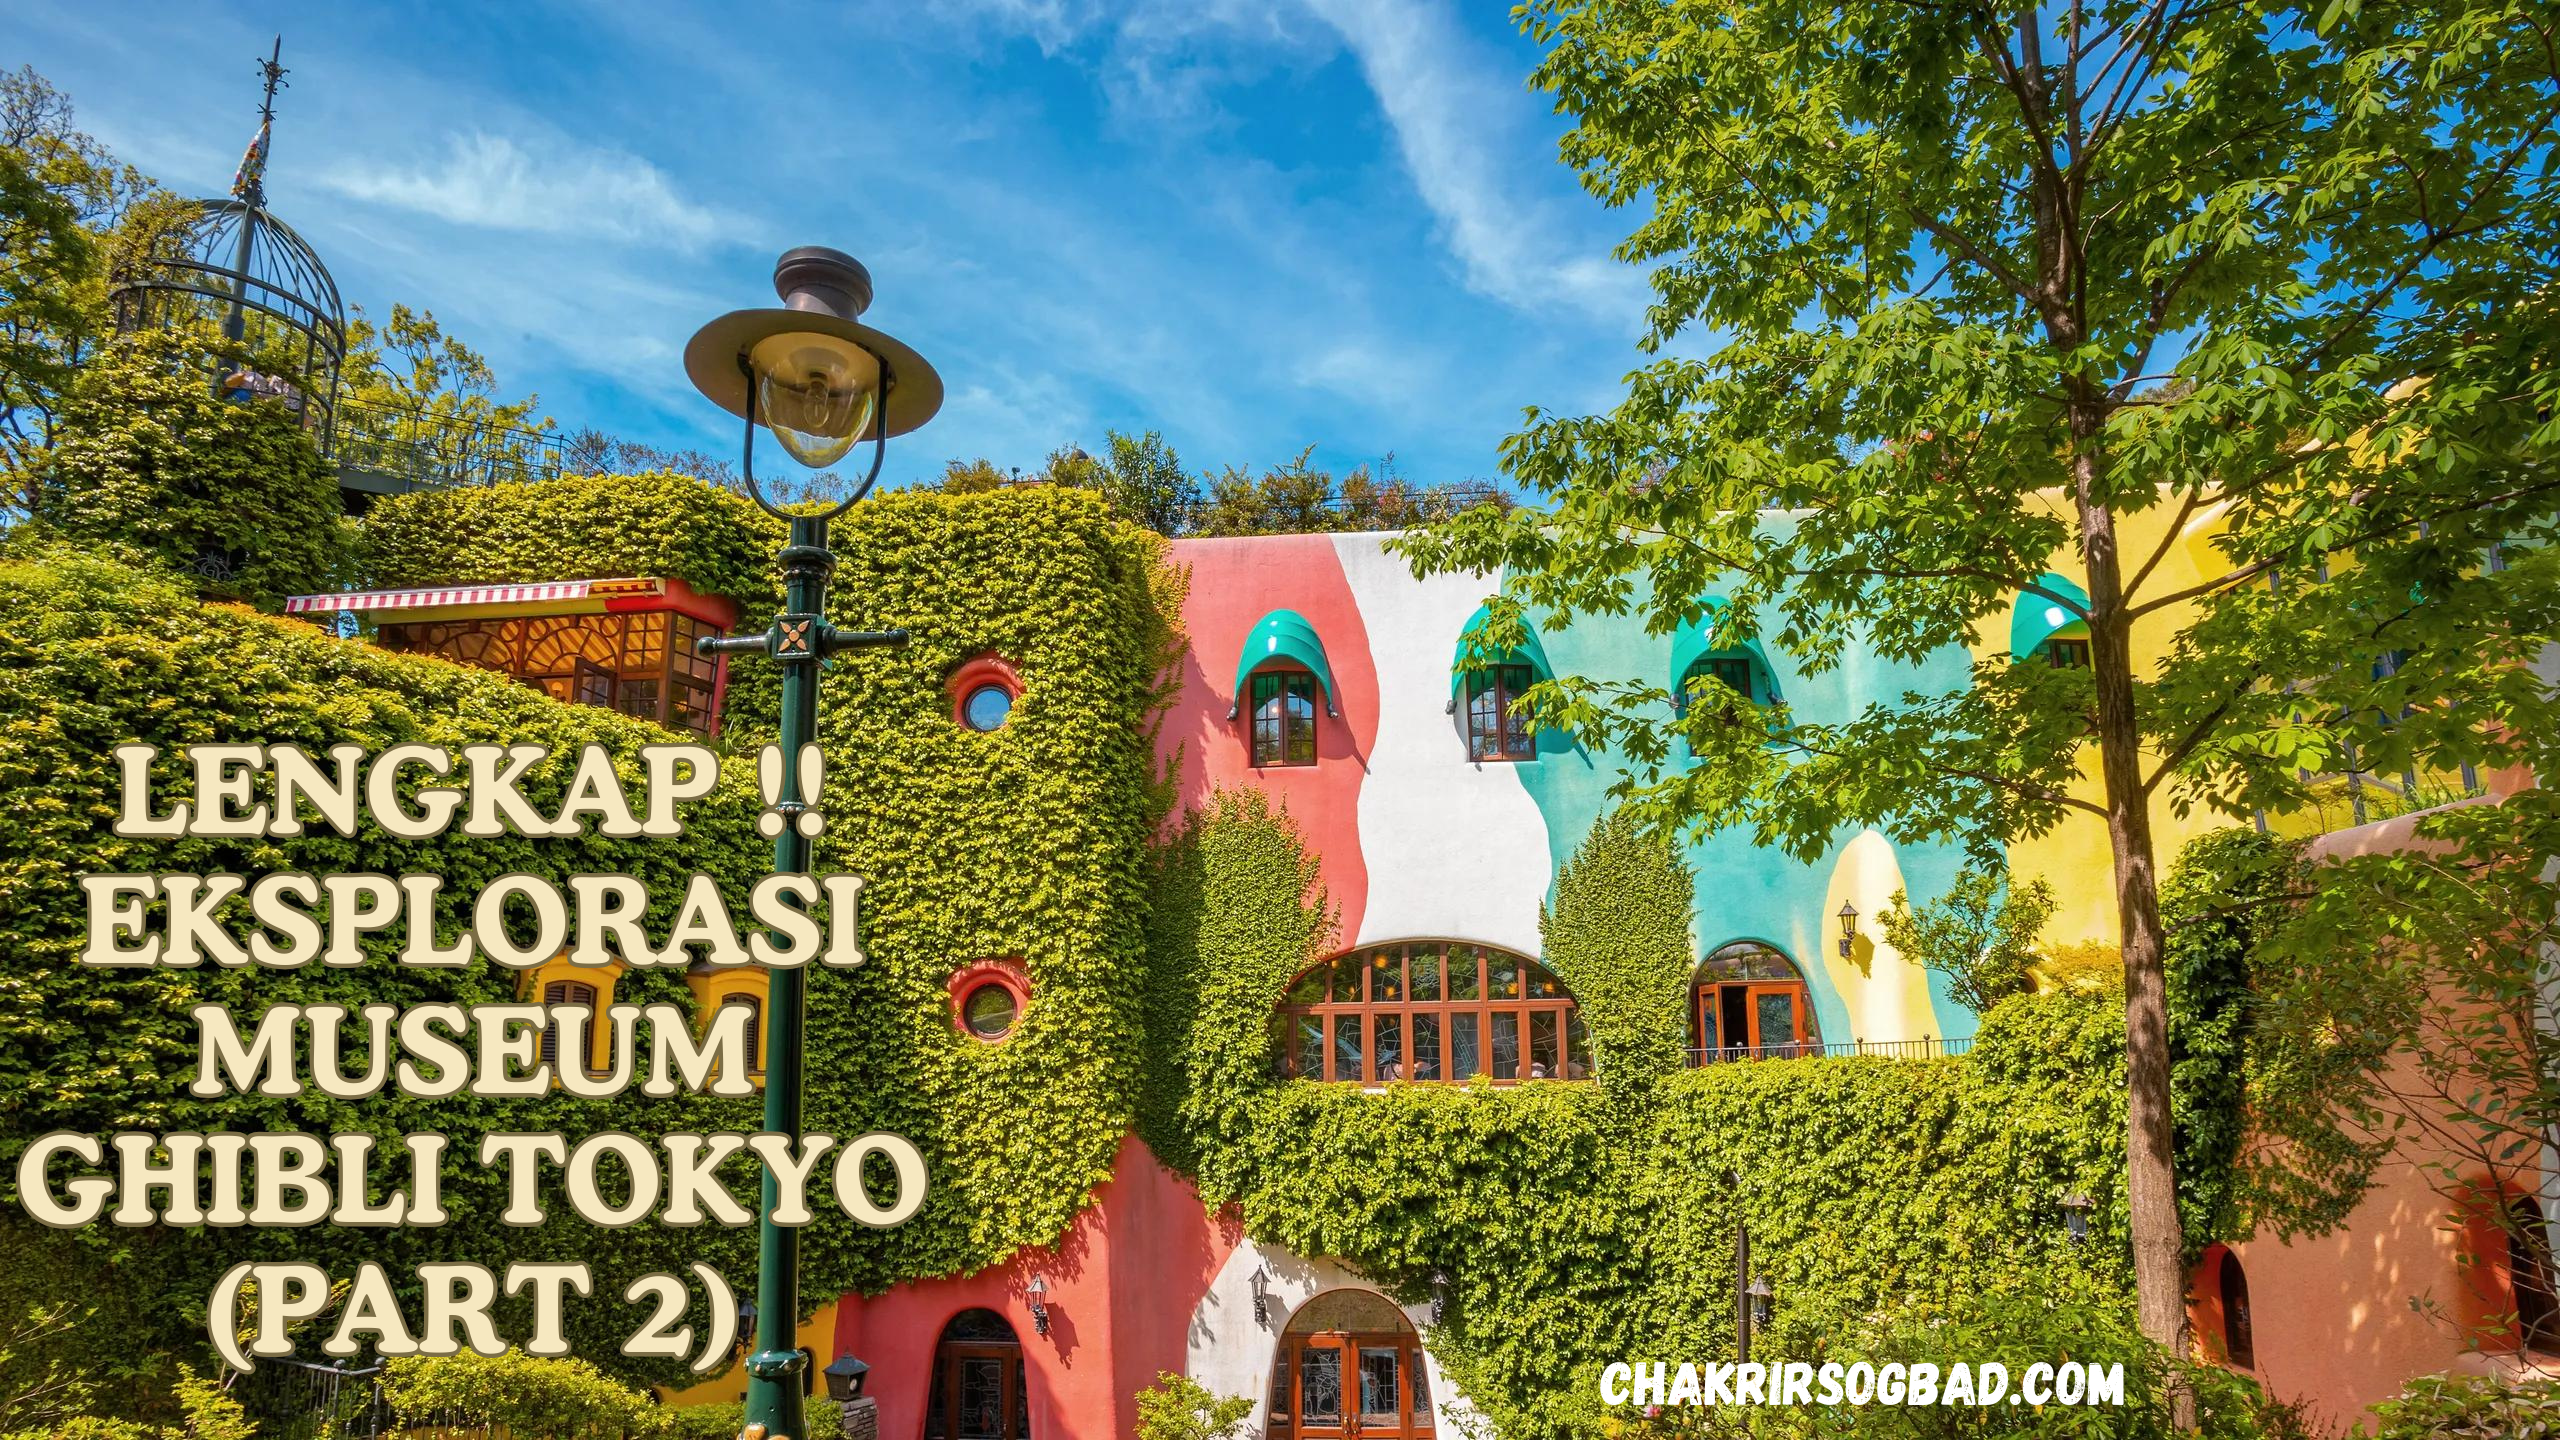 Lengkap !! Eksplorasi Museum Ghibli Tokyo (Part 2)